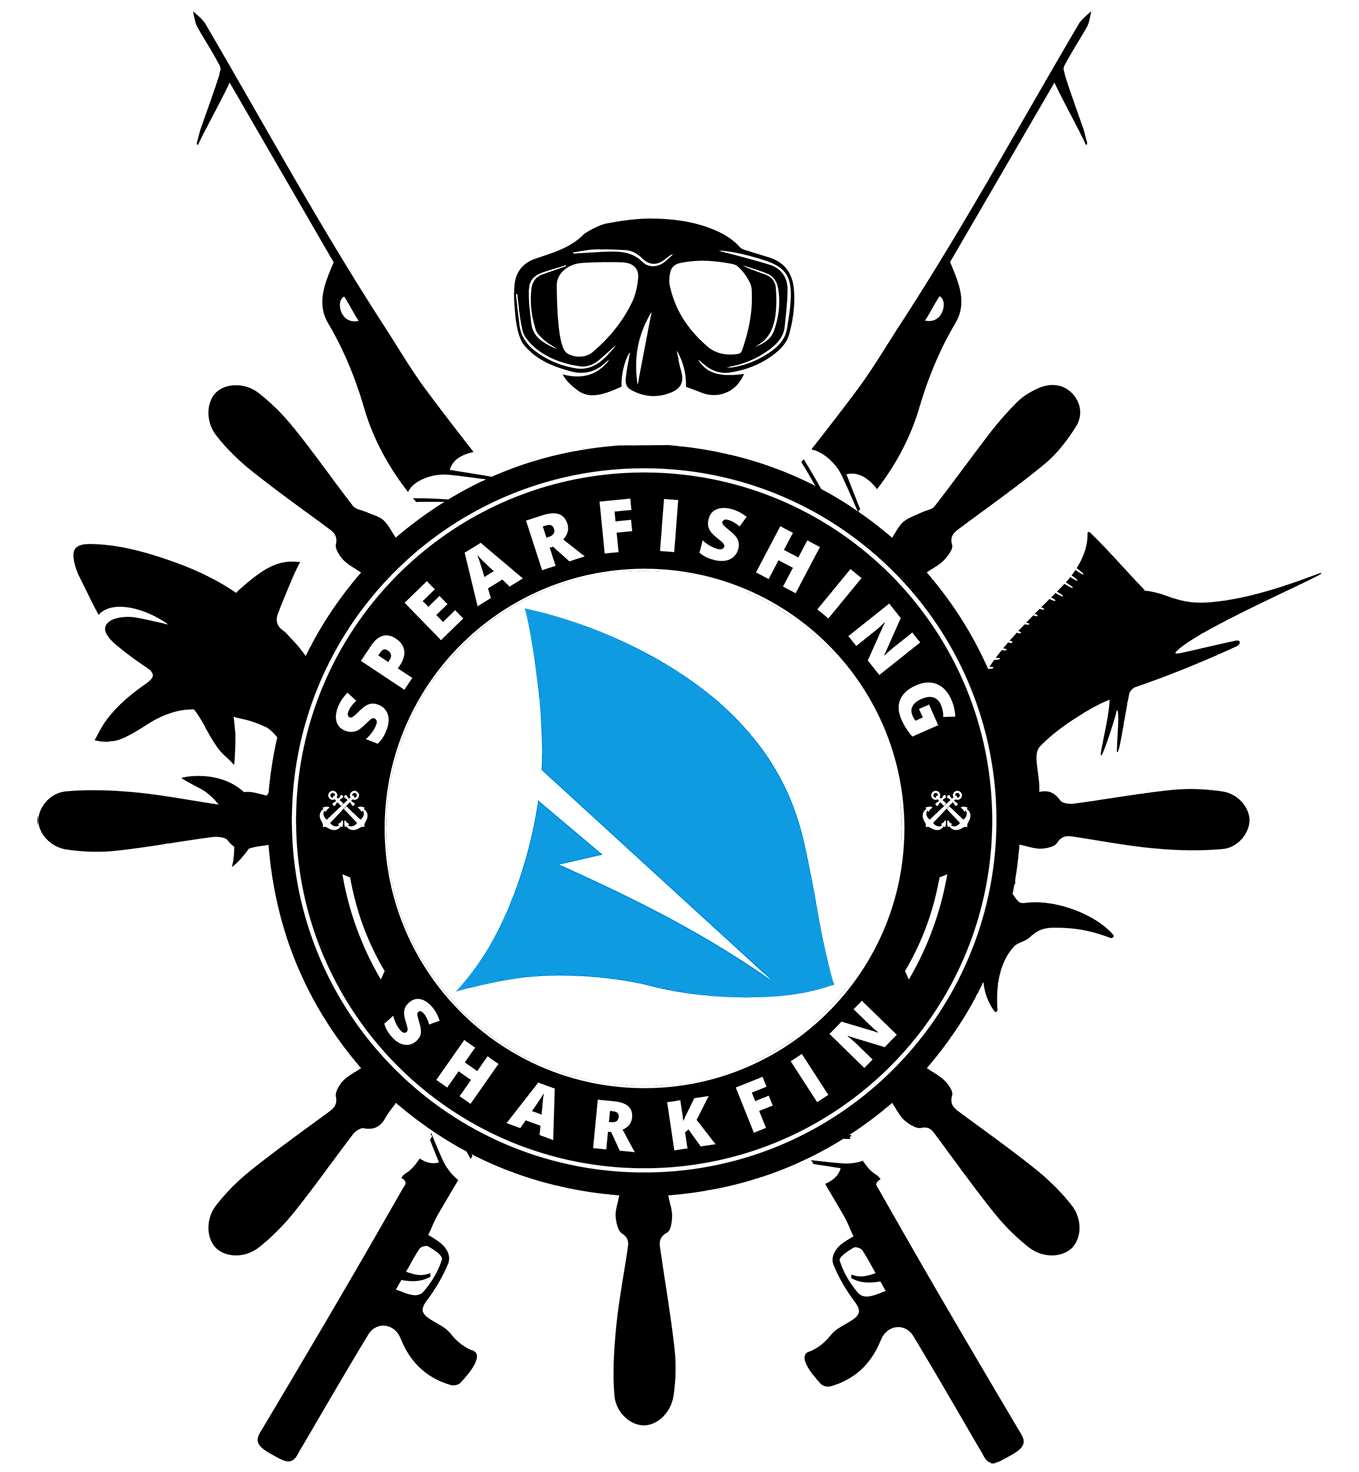 Sharkfin spearfishing. Since 2008